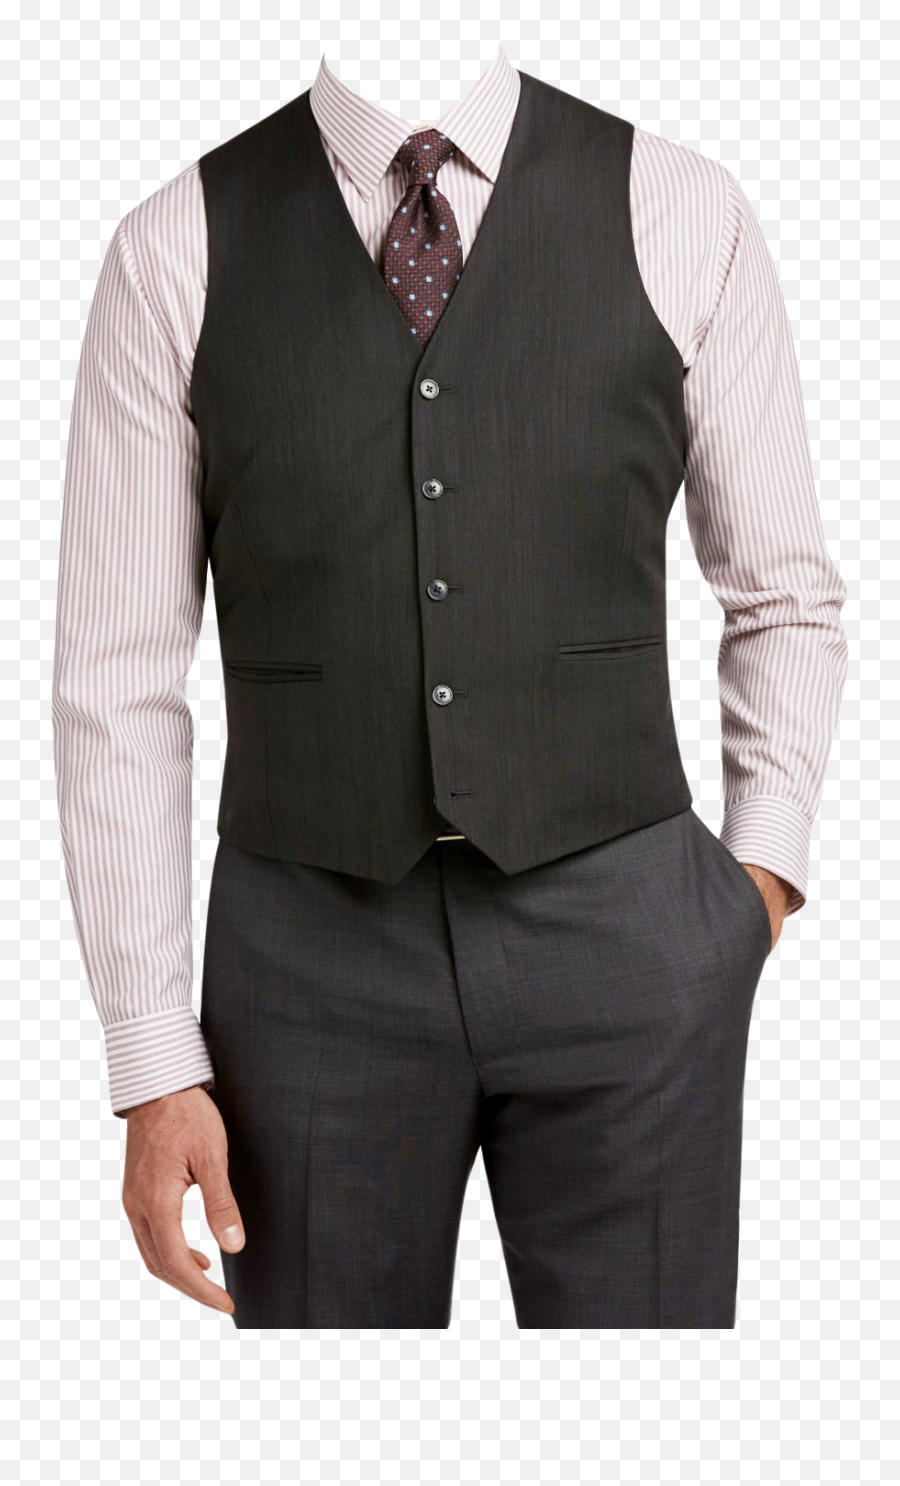 Coat Png Transparent Images - Png Suits,Man In Suit Transparent Background